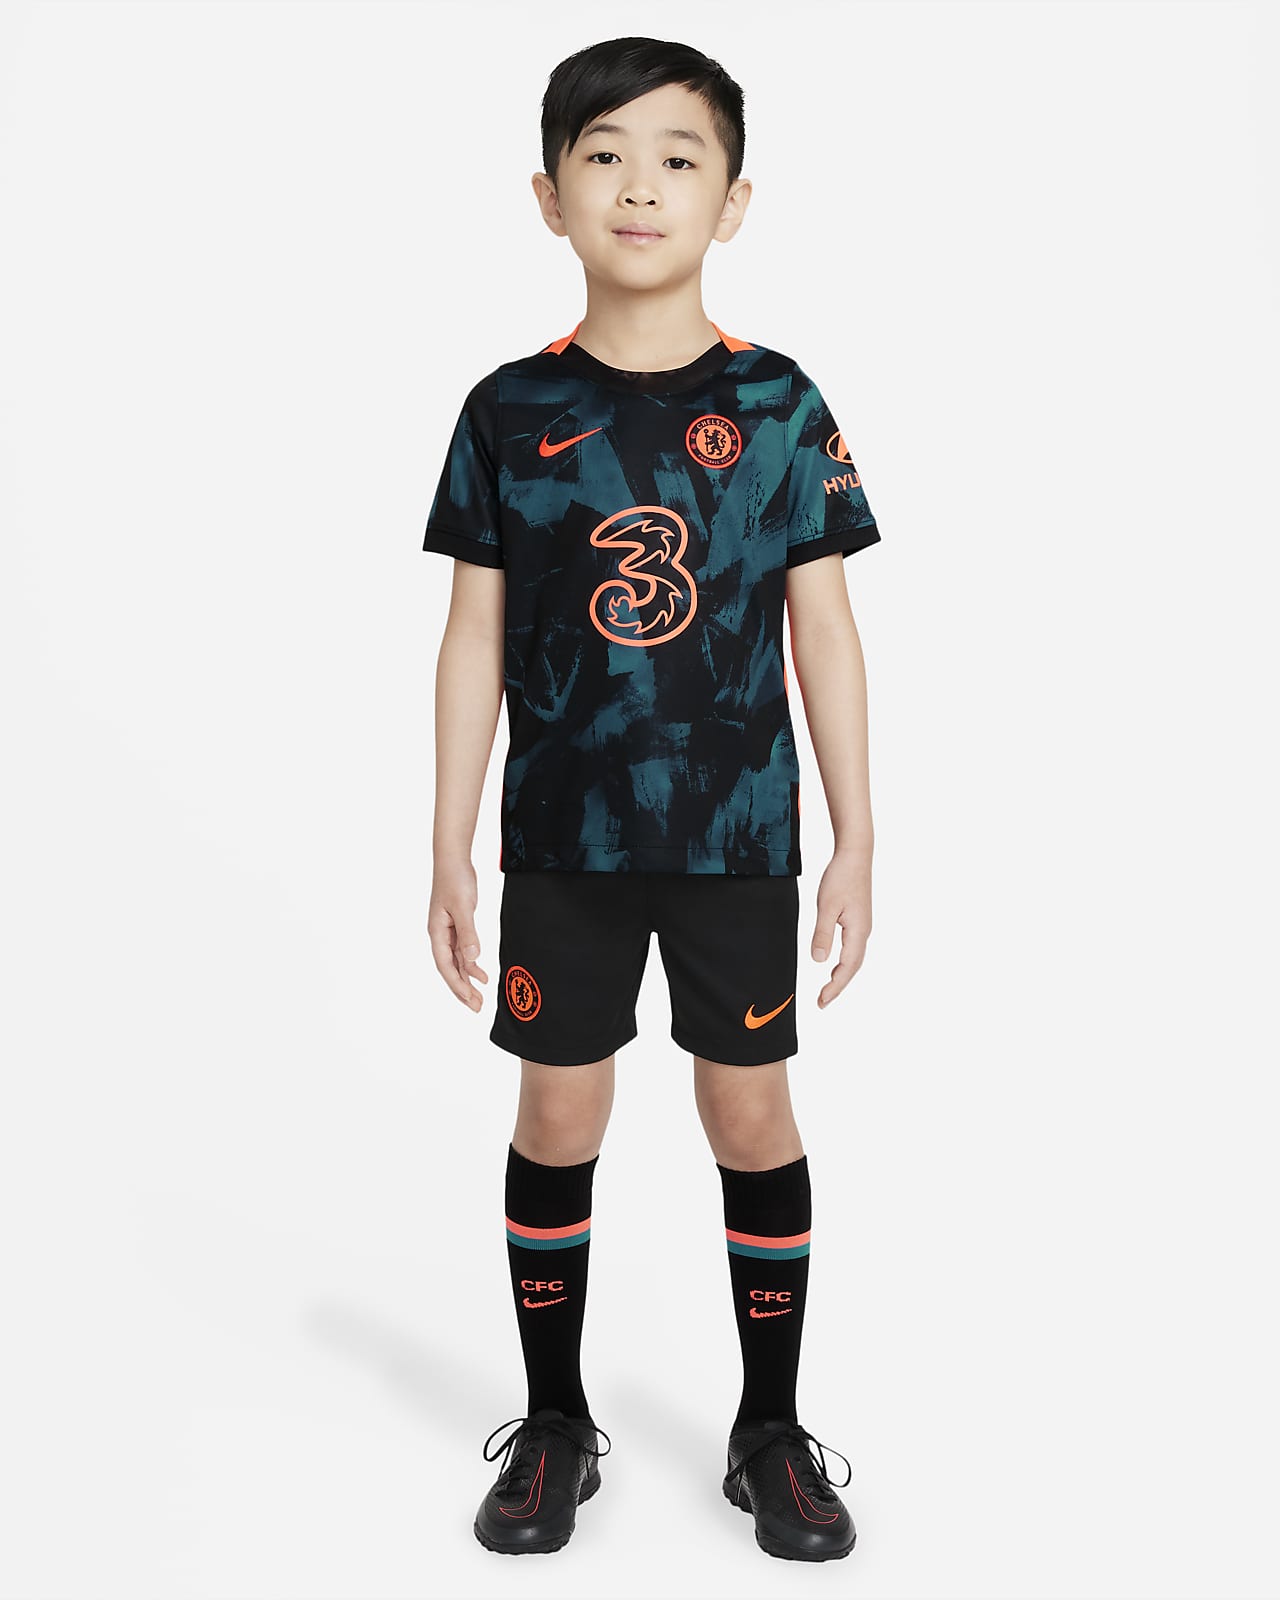 Chelsea FC 2021/22 Third Little Kids' Soccer Kit